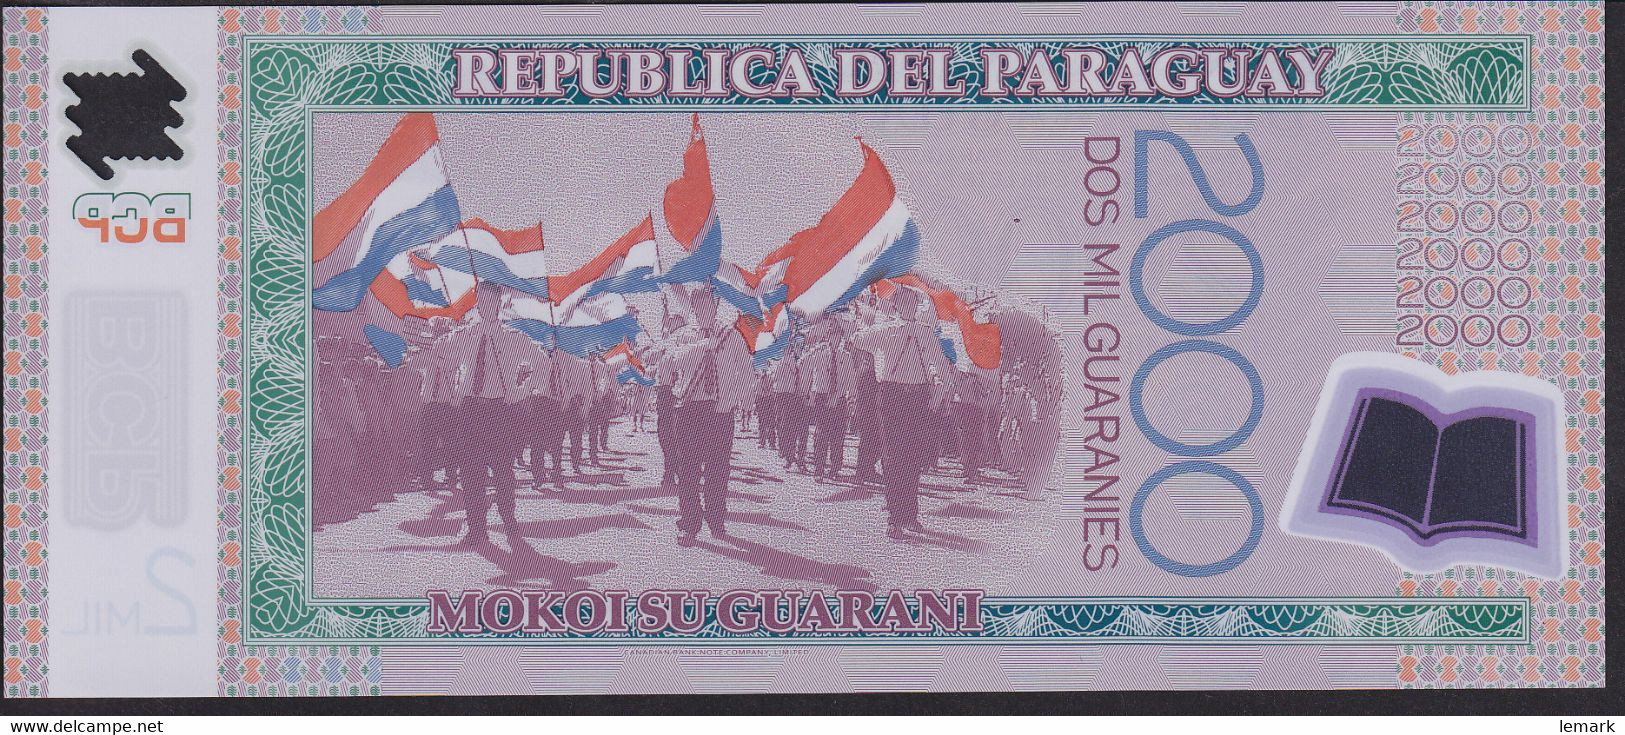 Paraguay 2000 Guaranies 2011 P228c UNC - Paraguay